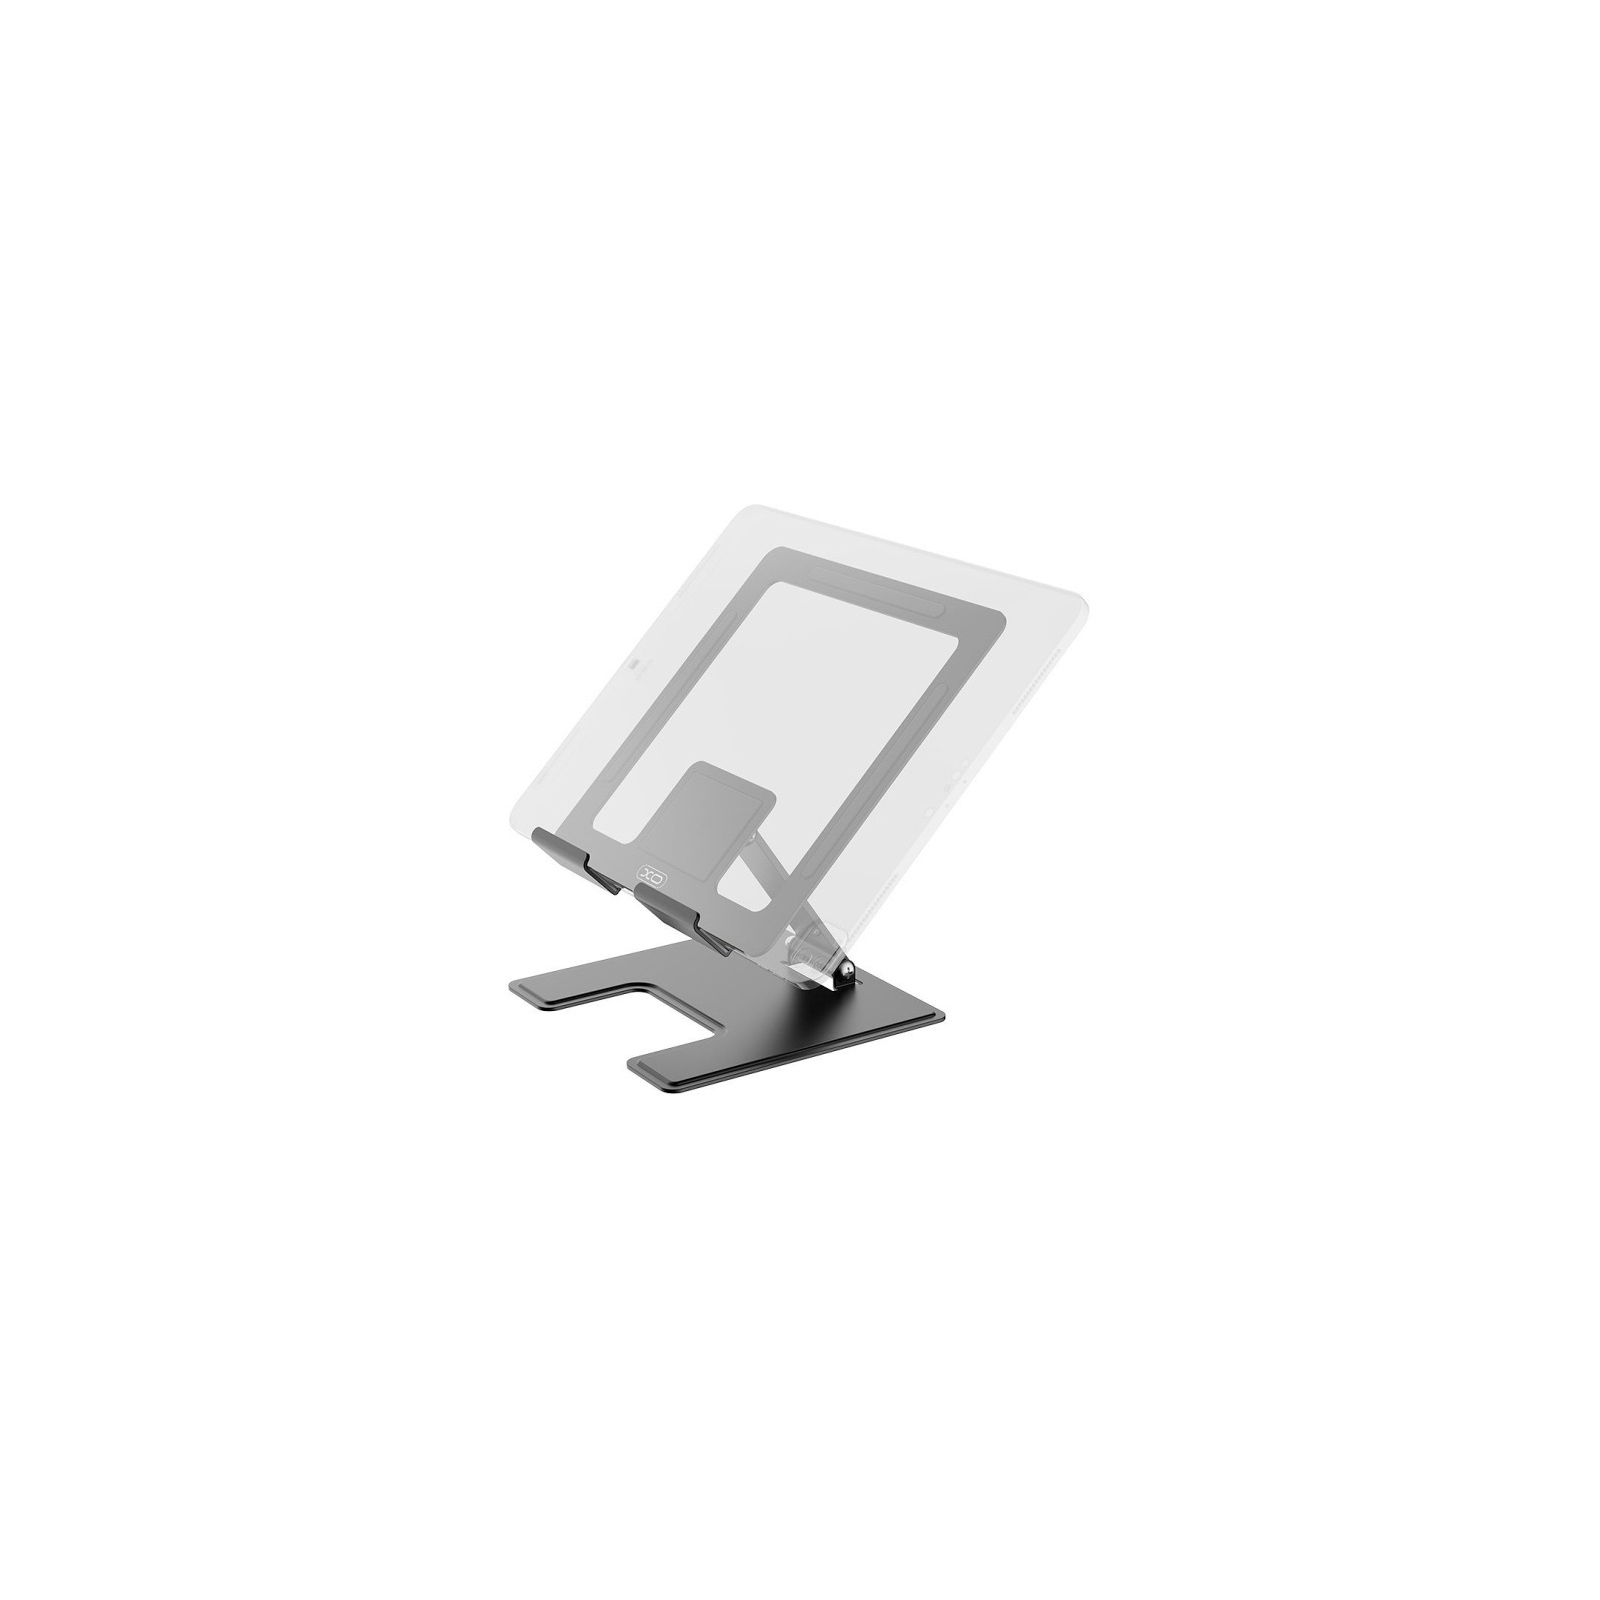 Подставка для планшета XO C136 grey (XO-C136) изображение 2